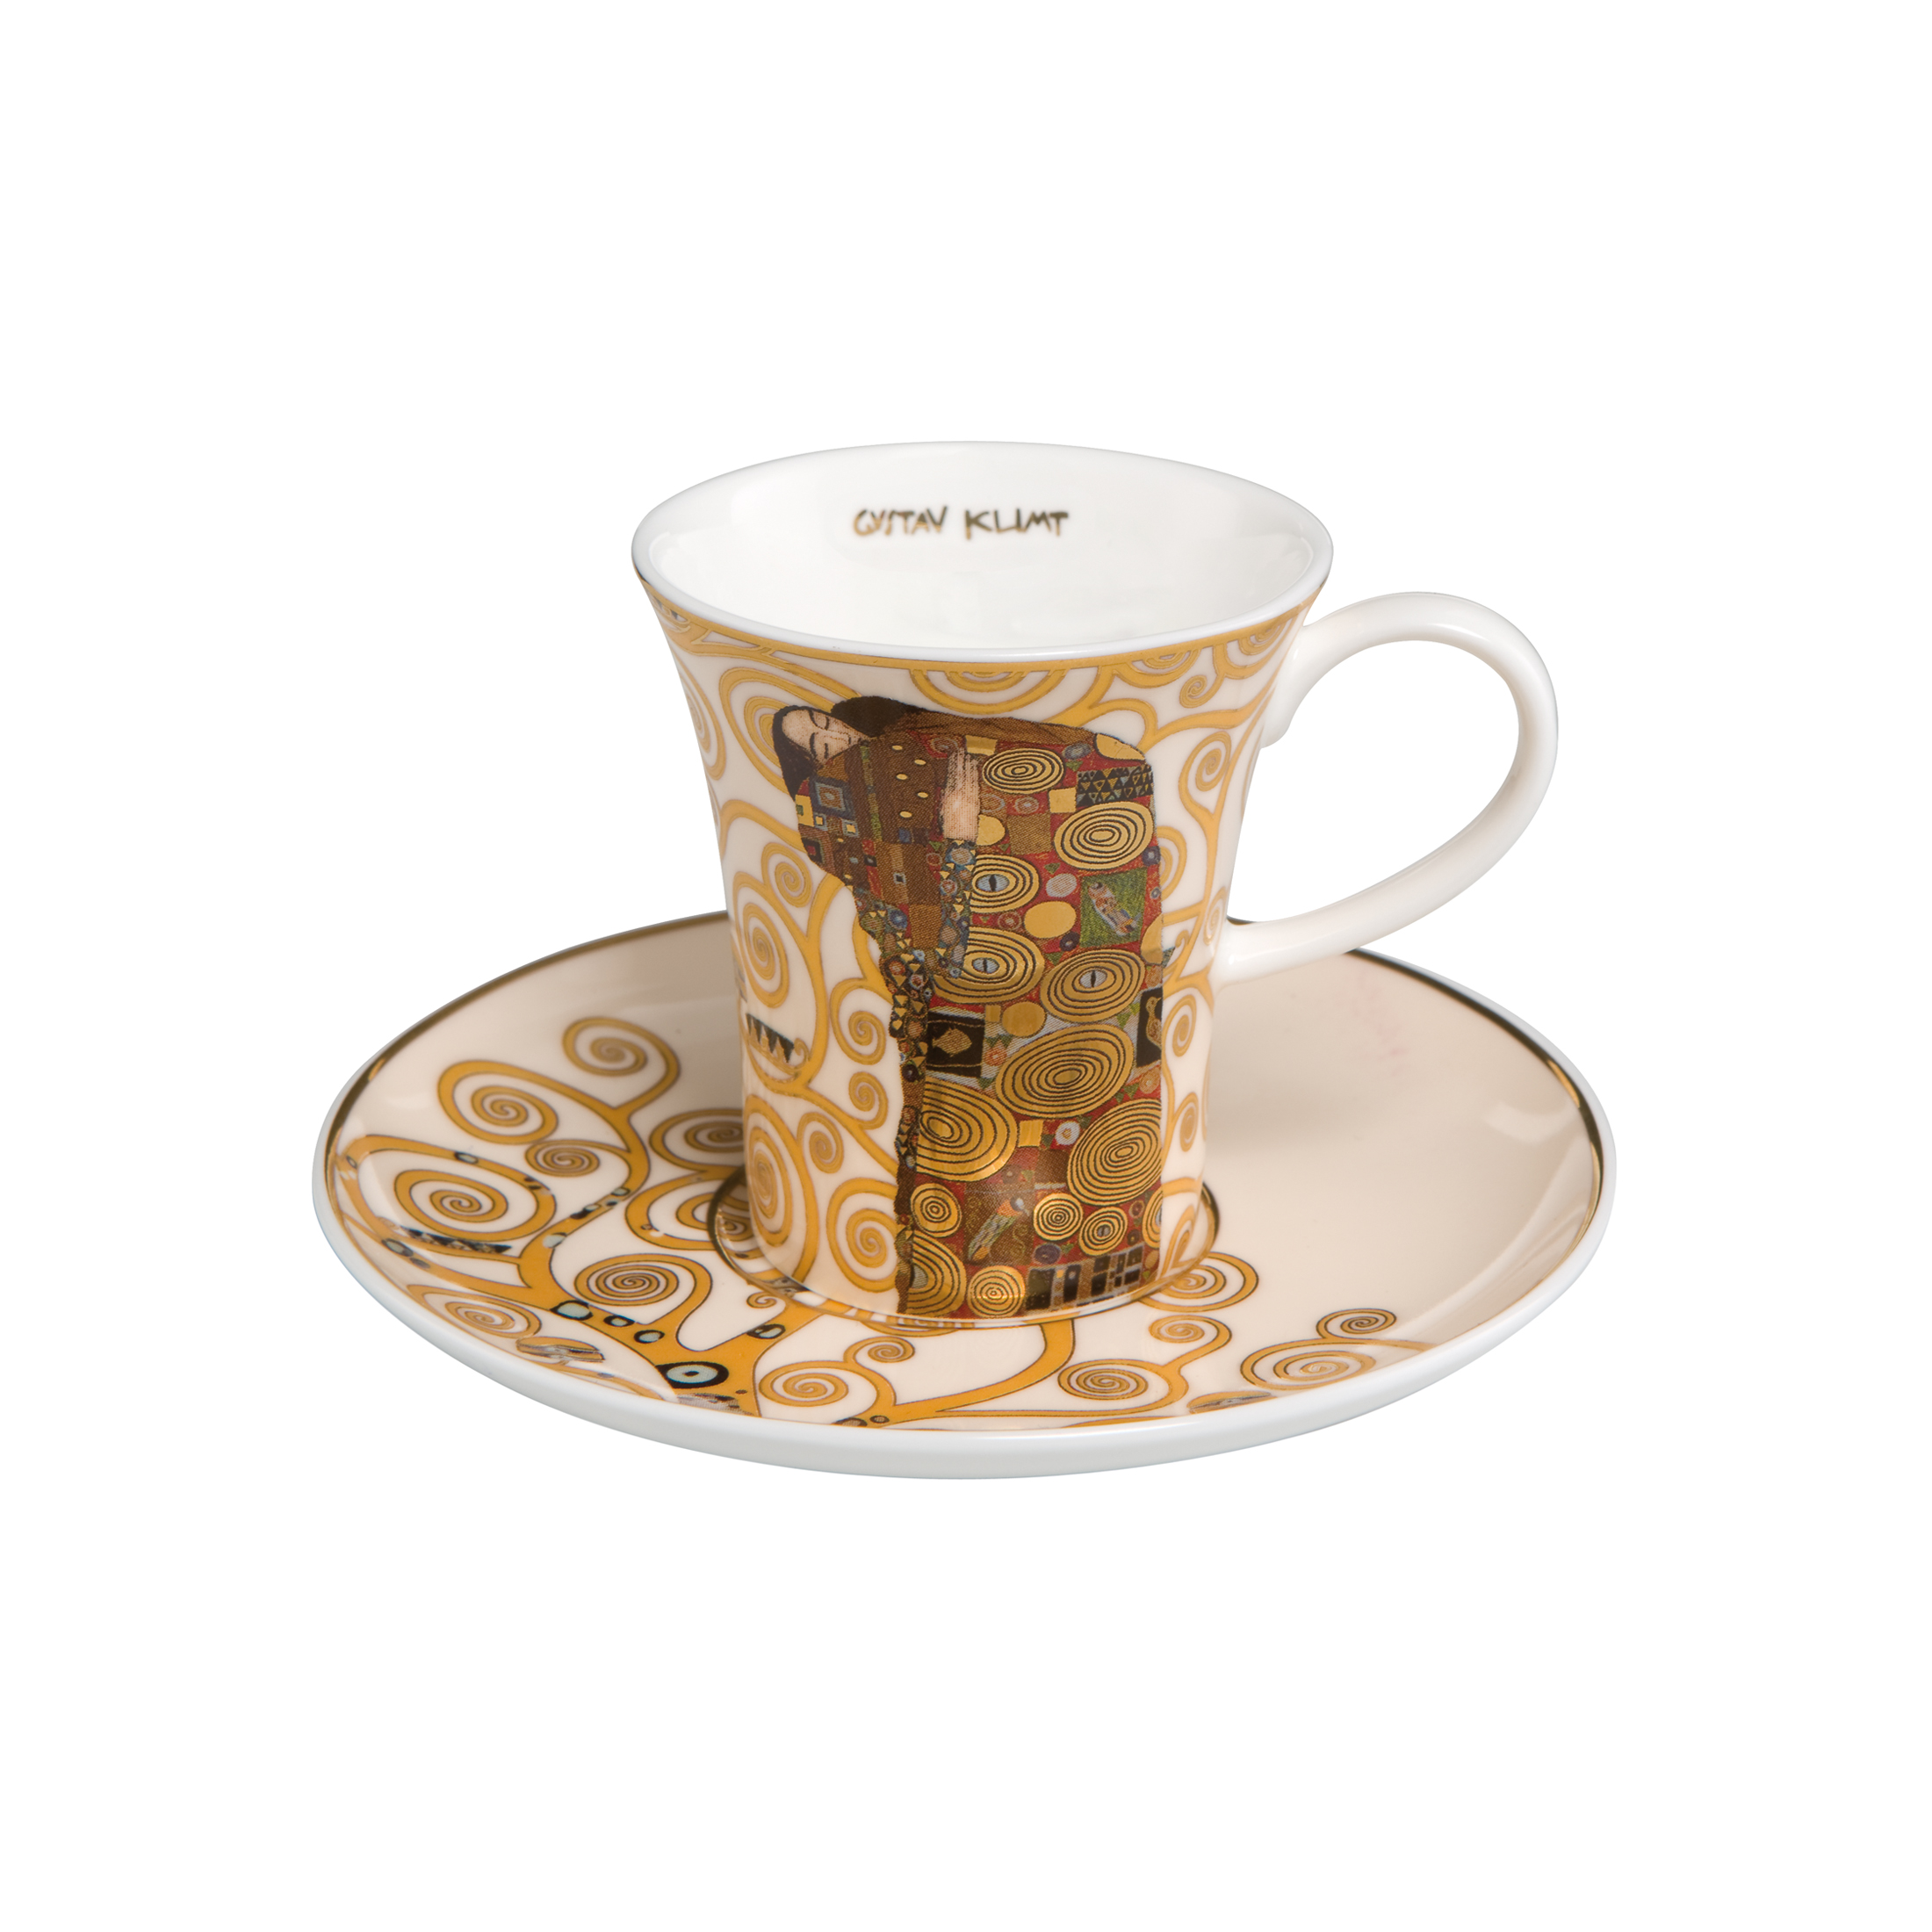 Fulfilment - Artis Orbis Gustav Klimt 咖啡杯連底碟